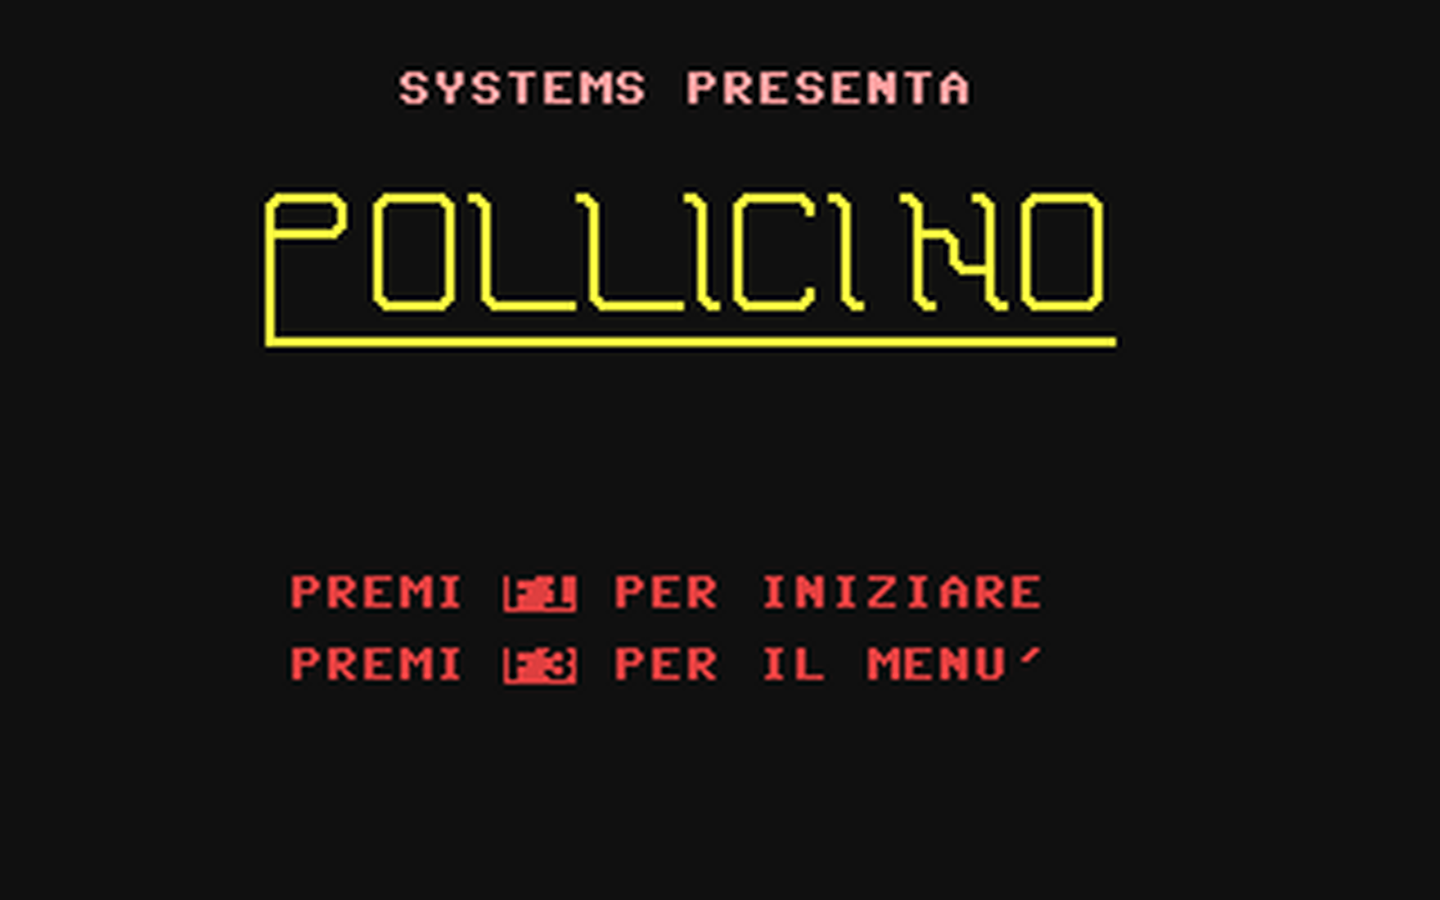 C64 GameBase Pollicino Systems_Editoriale_s.r.l./Commodore_(Software)_Club 1985